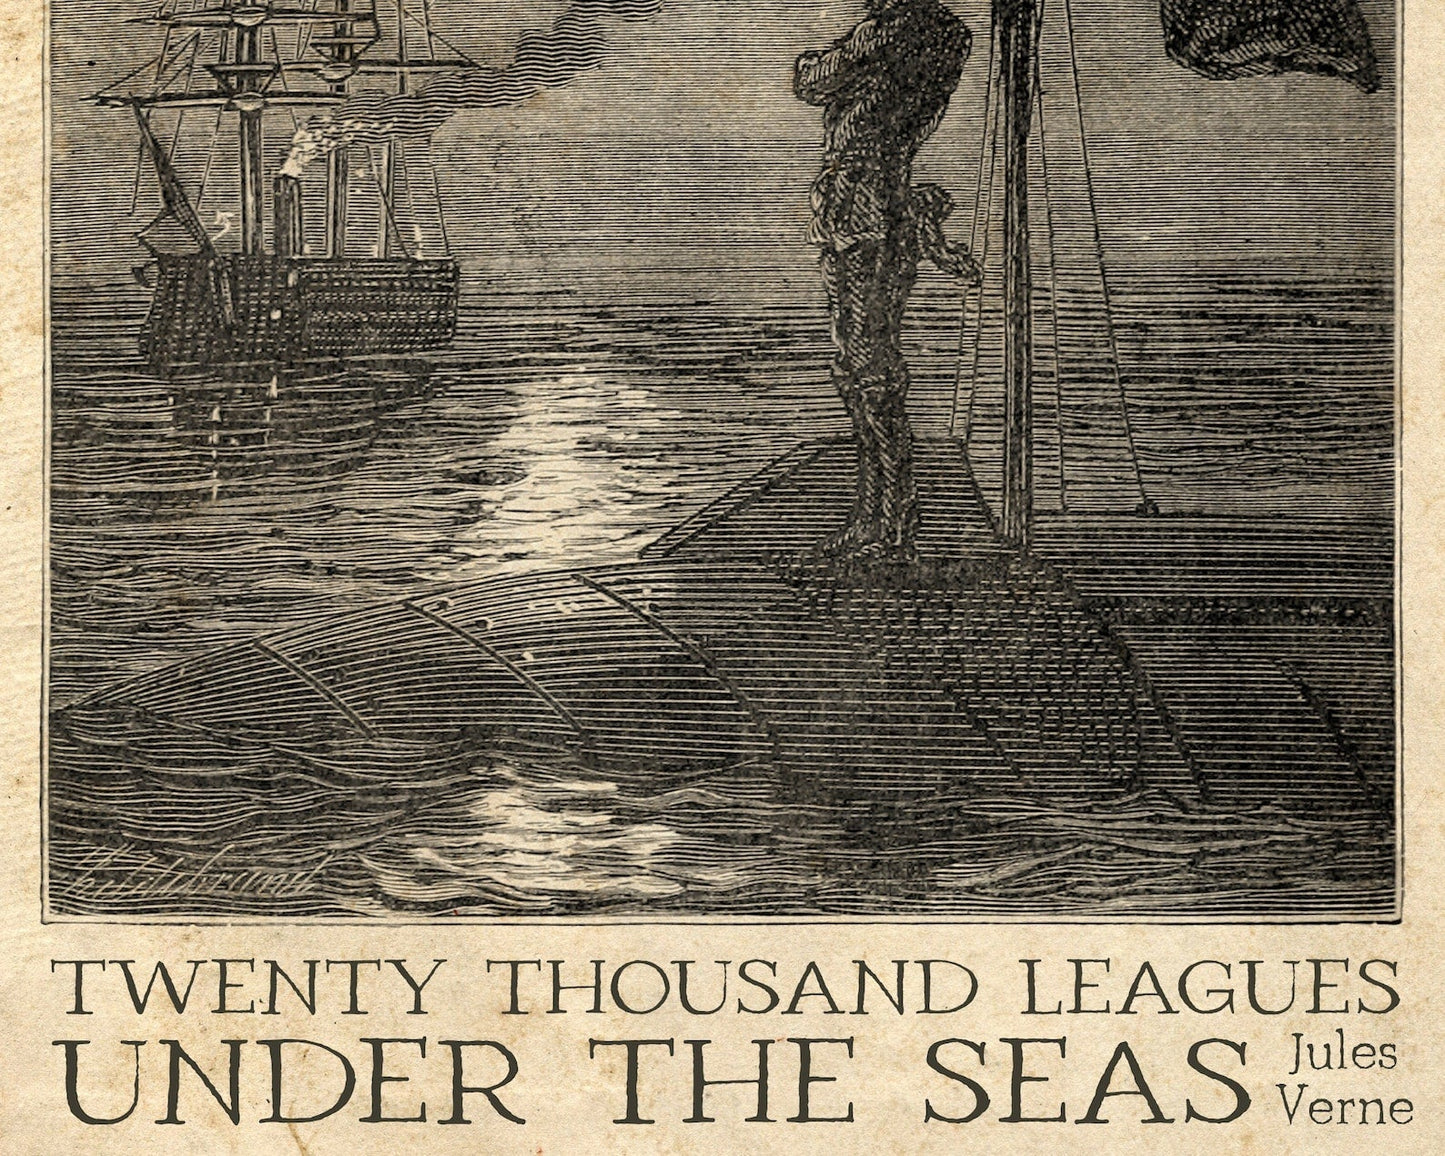 Édouard Riou "Captain Nemo's Gaze" Twenty Thousand Leagues Under the Seas (Jules Verne) - Mabon Gallery